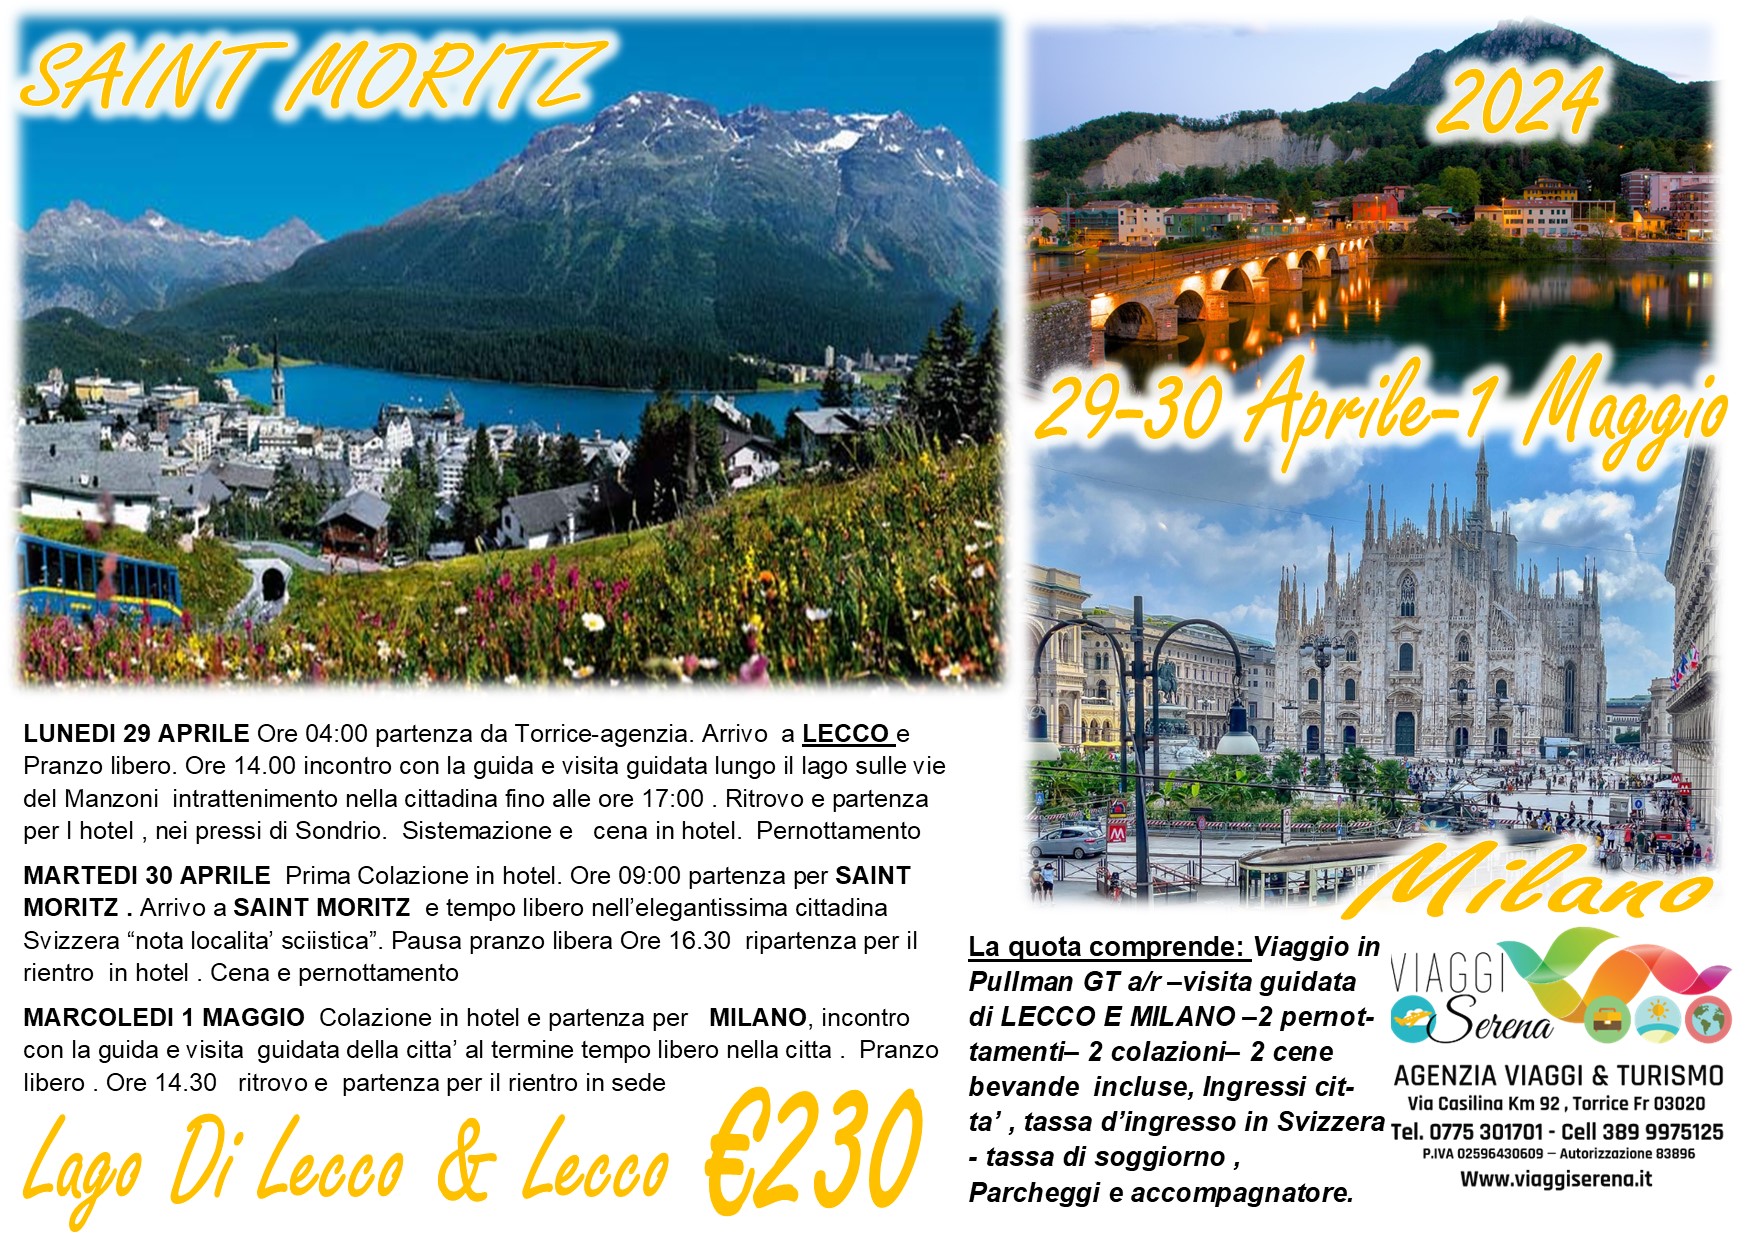 Viaggi di gruppo: Saint Moritz, Lago di Lecco & Milano 29-30 Aprile 1 Maggio €230,00